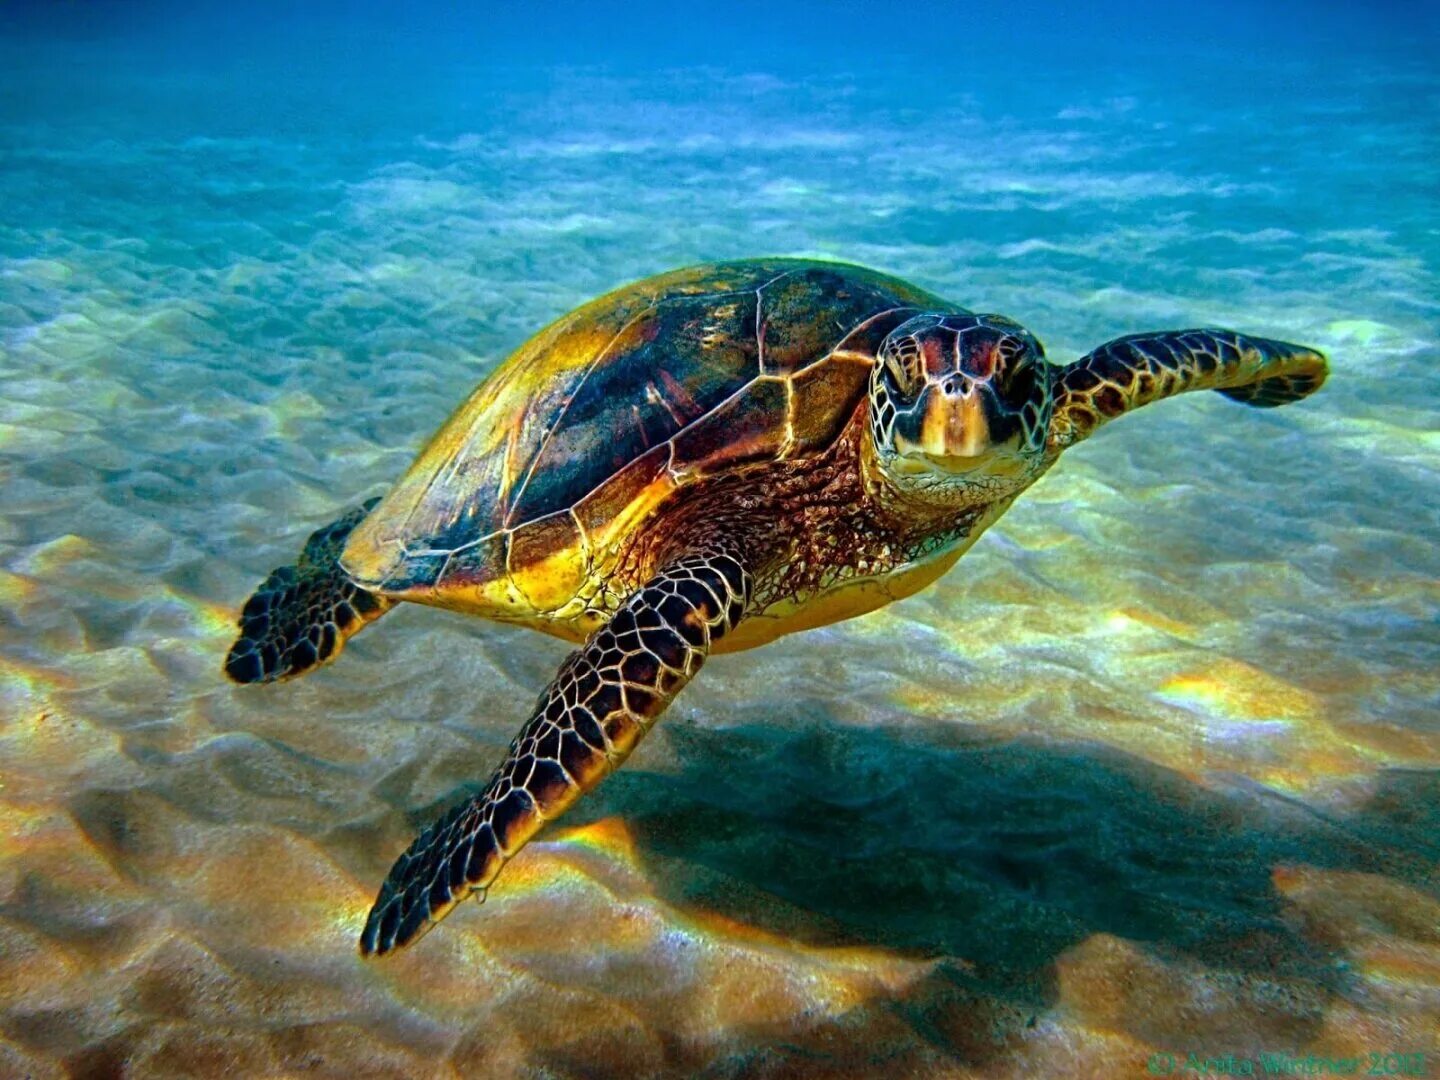 Хоксбильская морская черепаха. Зеленая (суповая морская черепаха). Водоплавающая черепаха морская. Черепахи Атлантического океана.